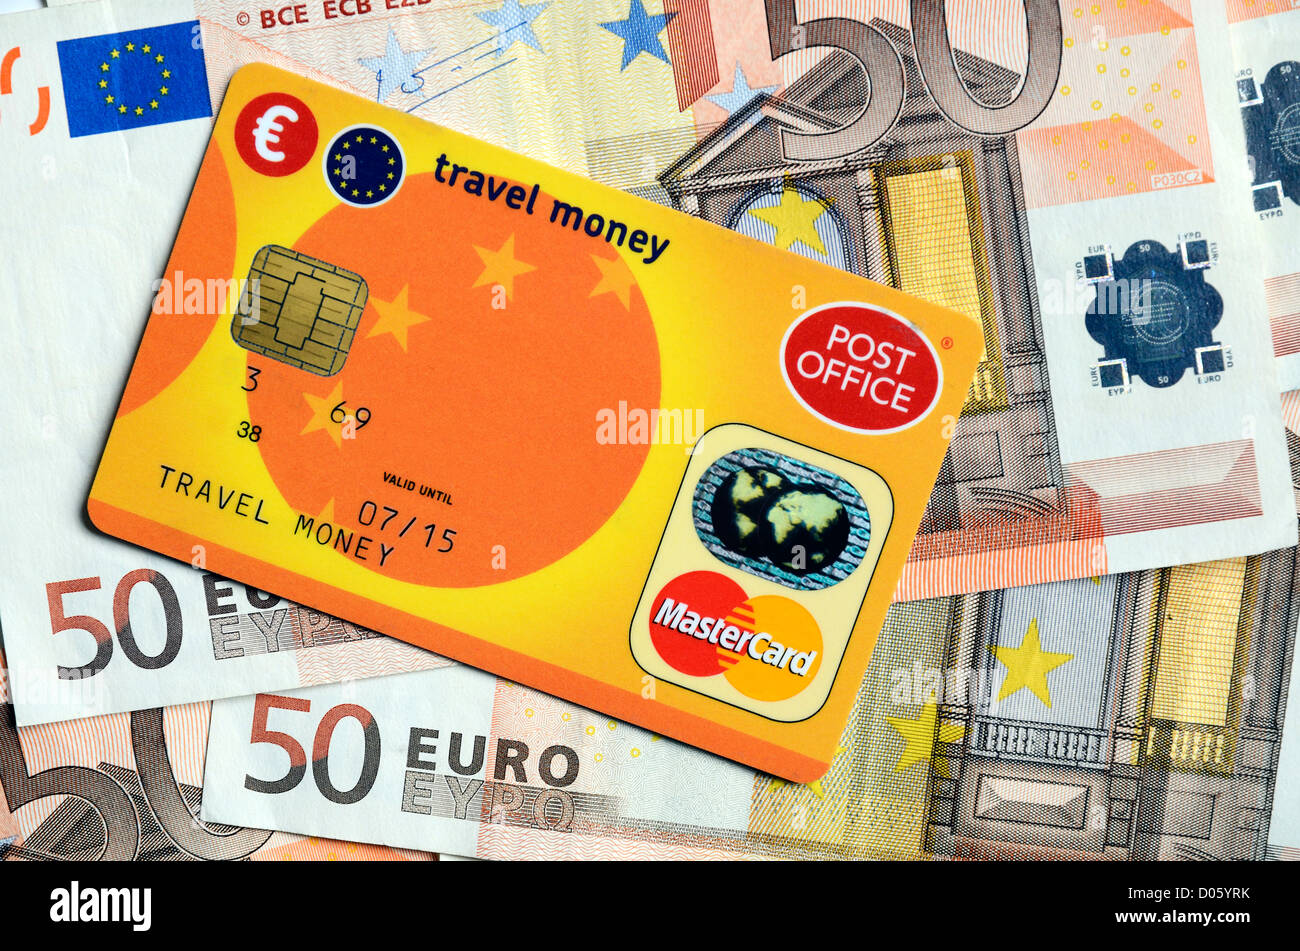 Post office prepaid euro card